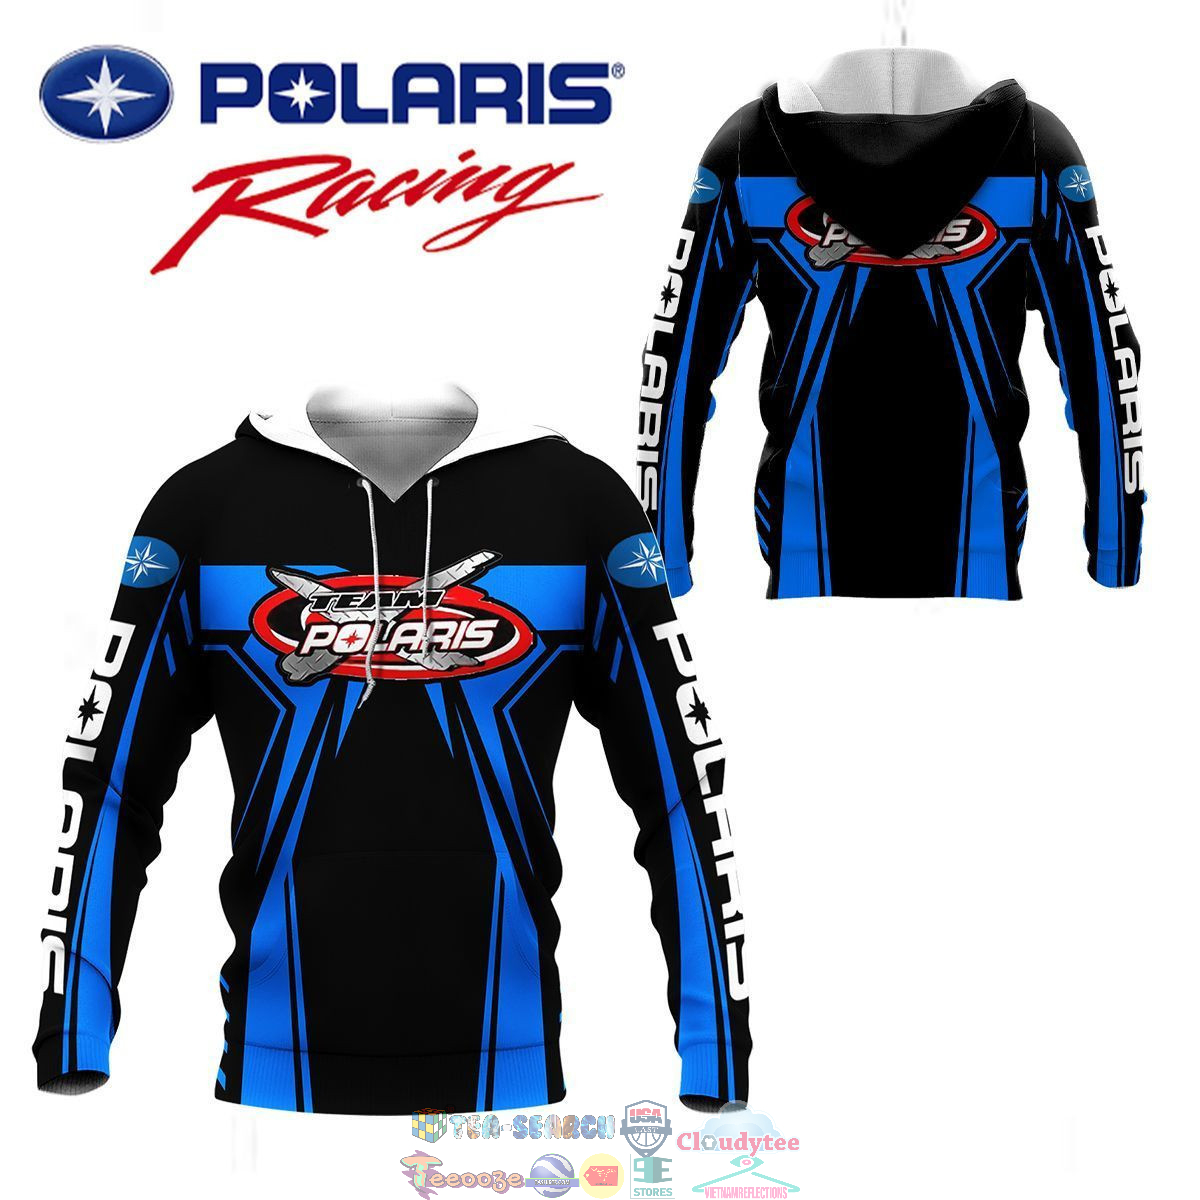 Polaris Racing Team ver 2 3D hoodie and t-shirt